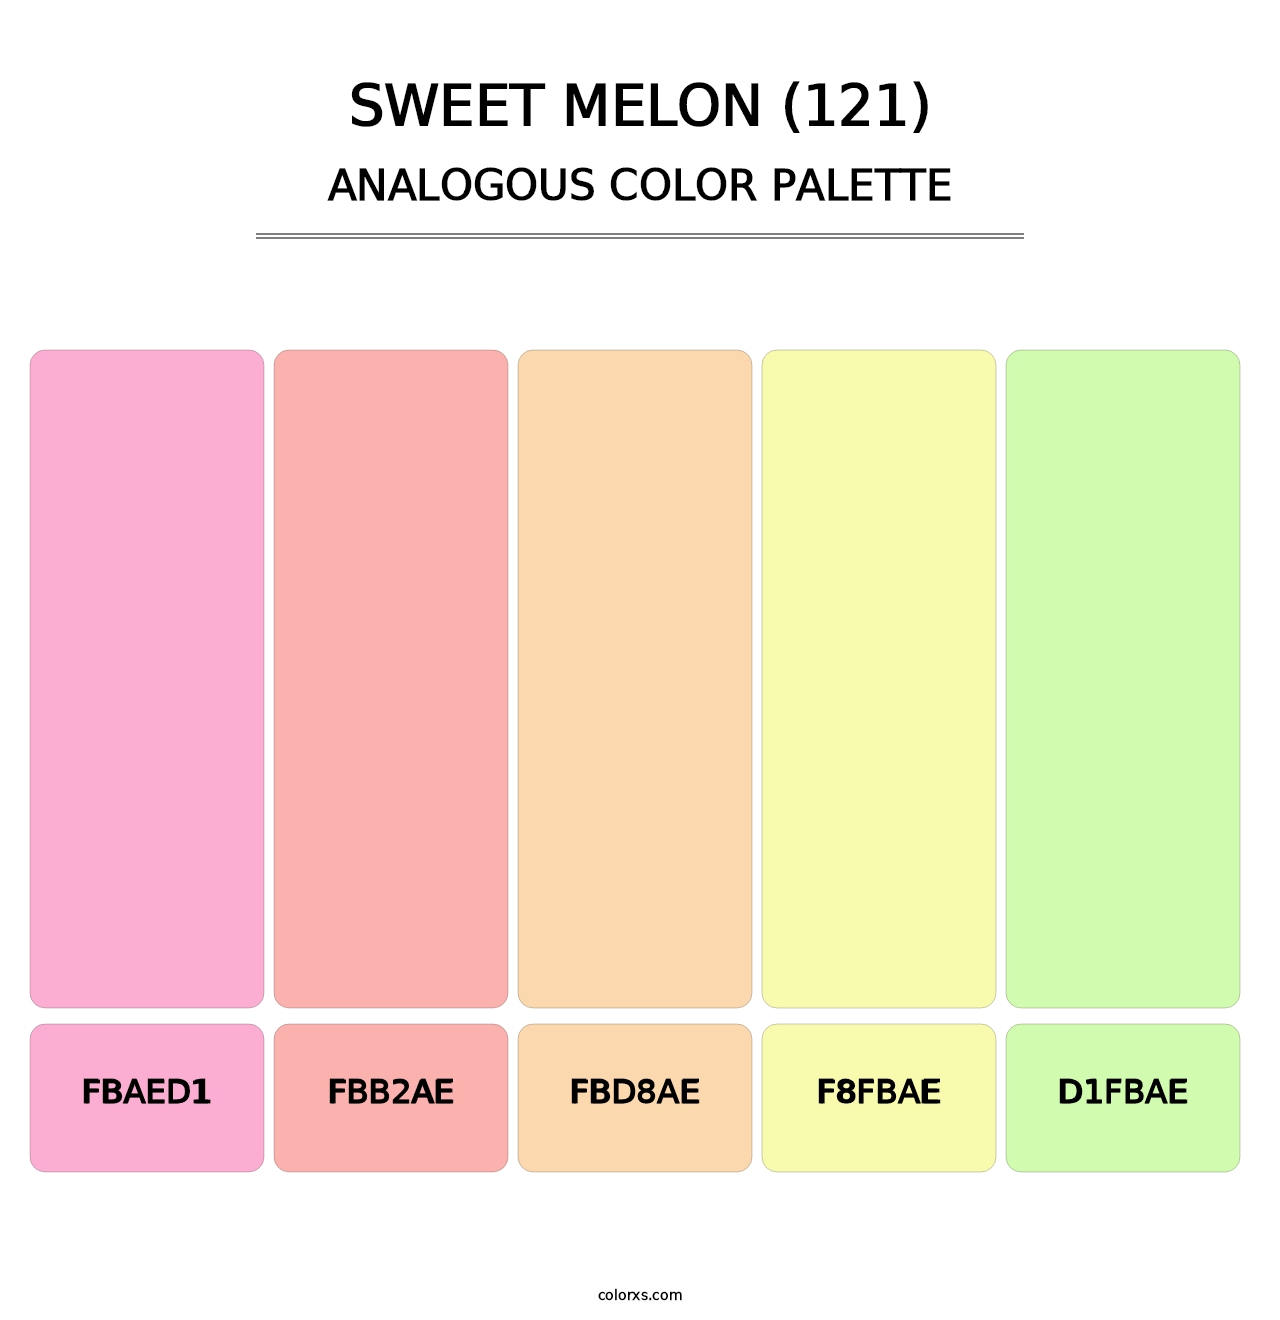 Sweet Melon (121) - Analogous Color Palette